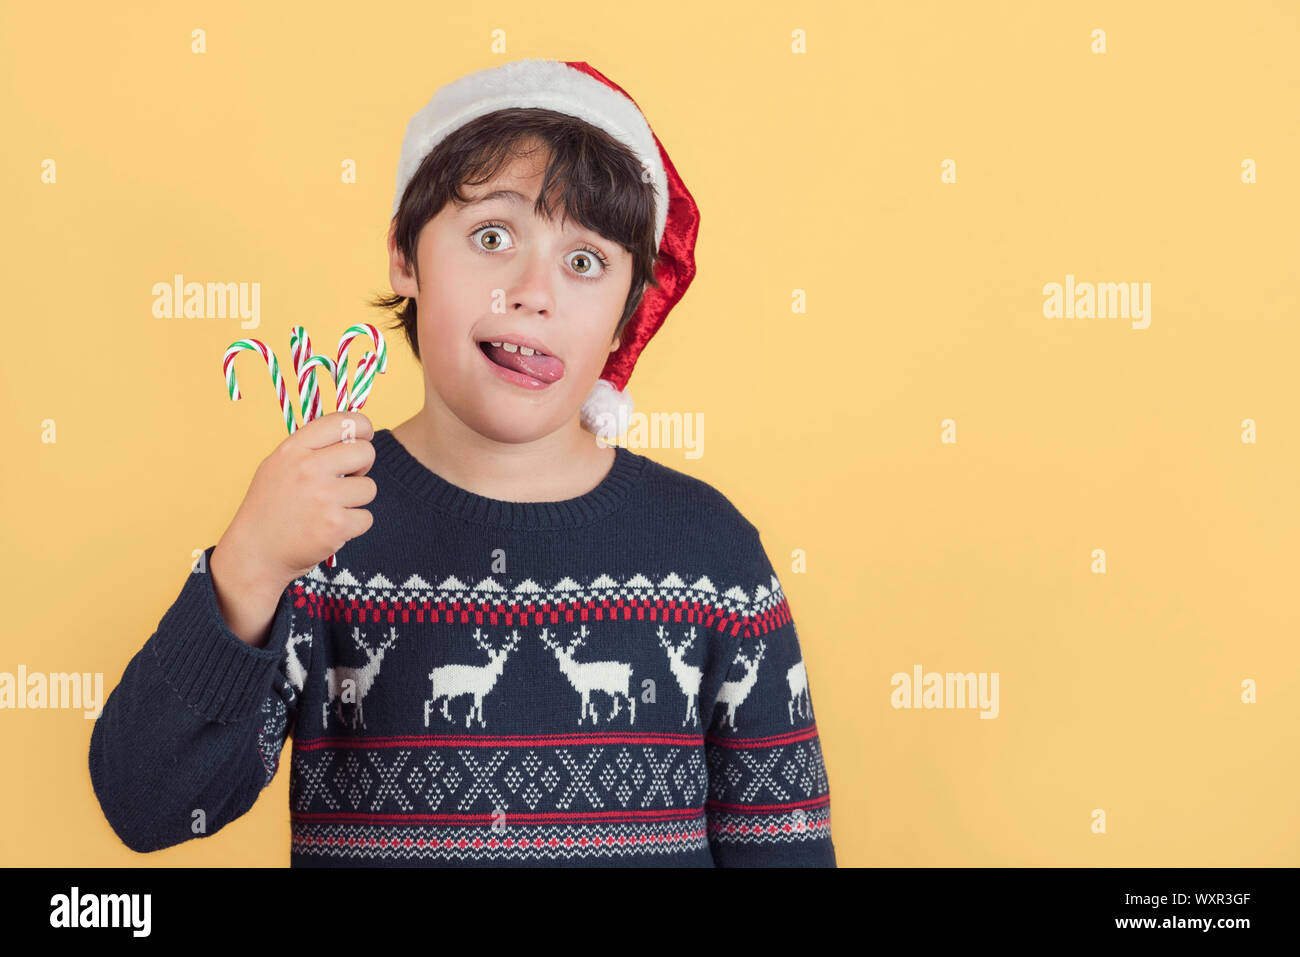 Child Wearing Christmas Santa Claus Hat et des cannes de bonbon sur fond jaune Banque D'Images